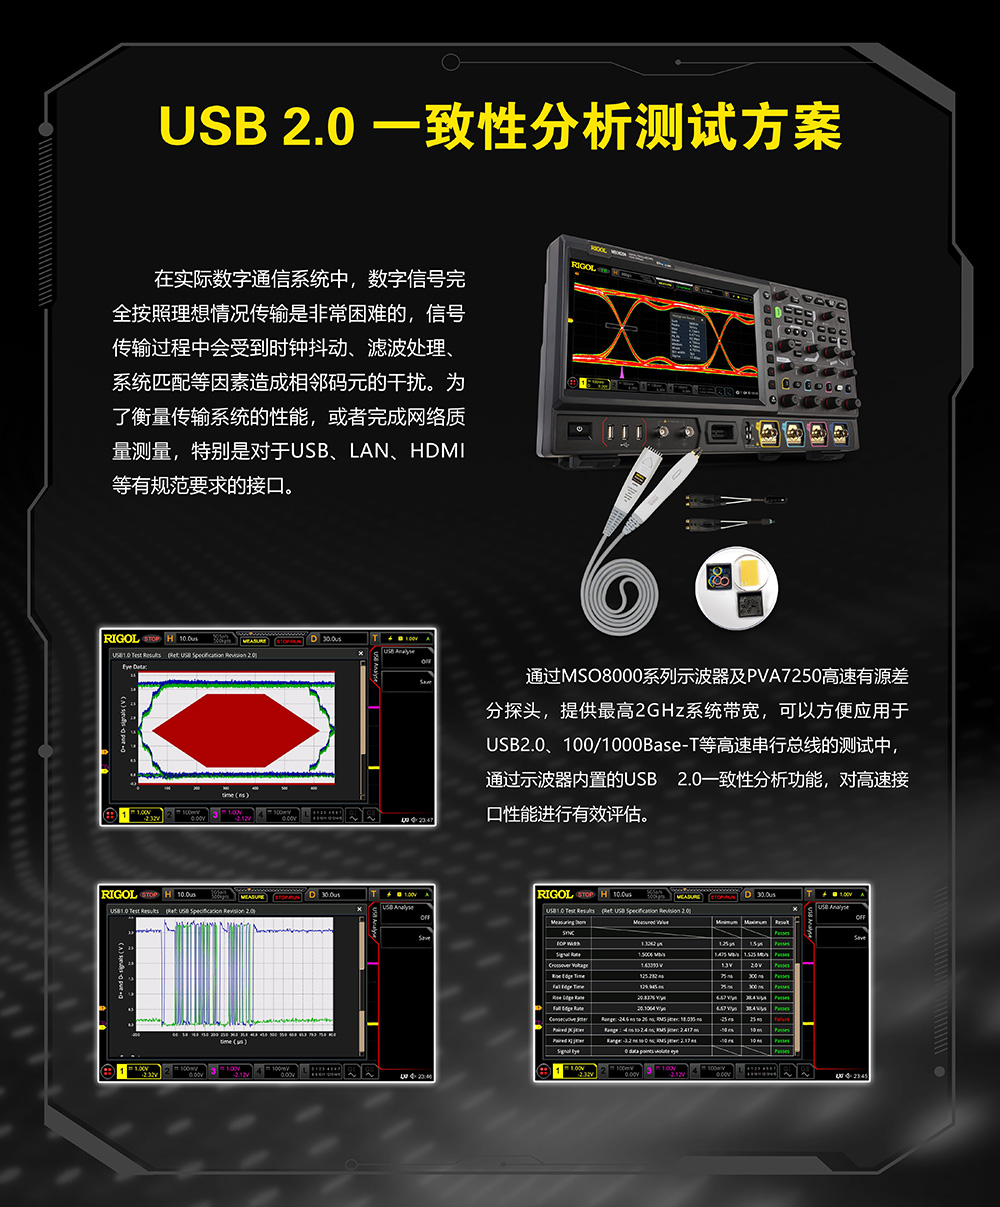 USB2.0 一致性分析测试方案